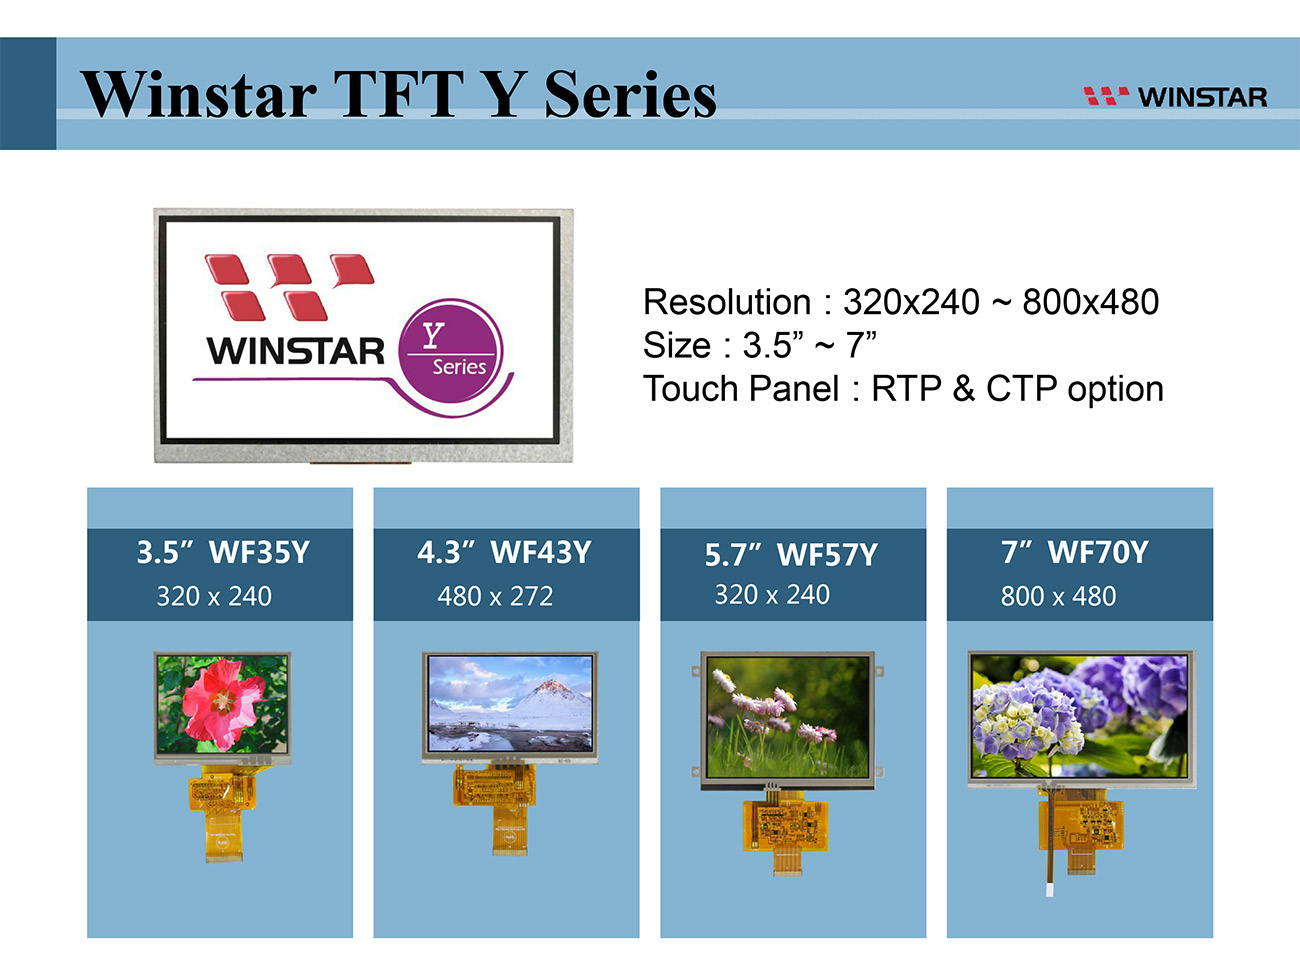 TFT LCD Winstar - Serie Y - 3.5 tft lcd, 3.5" tft lcd, tft lcd 3.5, tft lcd 3.5", 3.5 tft display, tft display 3.5, 4.3 tft lcd, 4.3 tft lcd, 4.3" tft lcd, tft lcd 4.3, tft lcd 4.3", 4.3 tft display, tft display 4.3, 5.7 tft lcd, 5.7" tft lcd, tft lcd 5.7, tft lcd 5.7", 5.7 tft display, tft display 5.7, 7 tft lcd, 7" tft lcd, tft lcd 7, tft lcd 7", 7 tft display, tft display 7, 7.0 tft lcd, 7.0 tft display